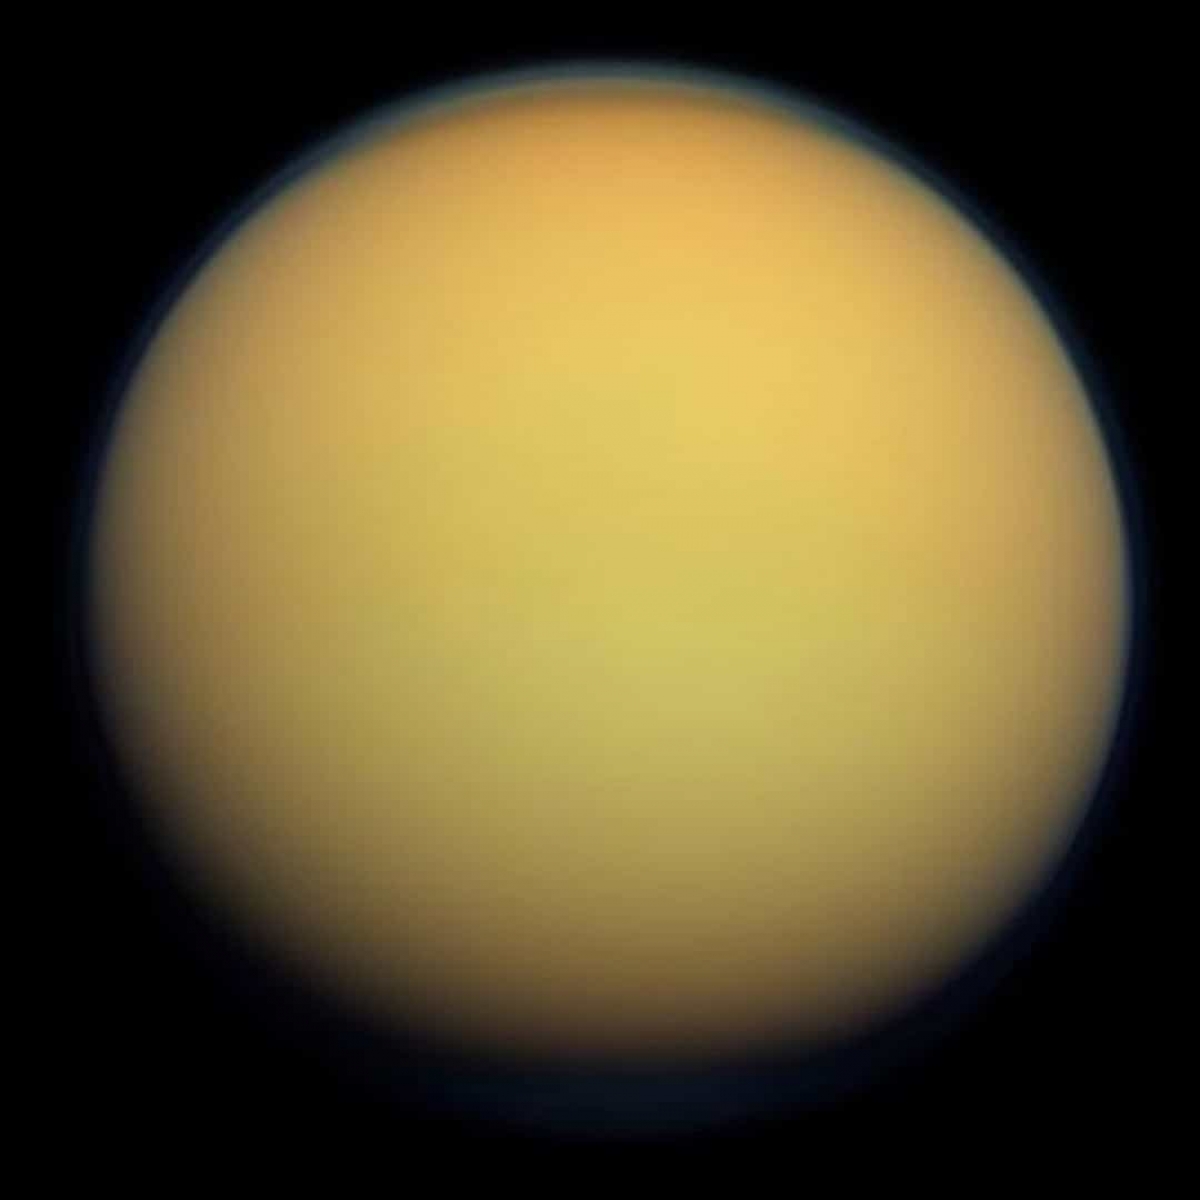 Titan là mặt trăng lớn nhất của Sao Thổ và là vệ tinh tự nhiên lớn thứ 2 trong hệ mặt trời. Titan là mặt trăng duy nhất có bầu khí quyền dày, có bề mặt đóng băng gồ ghề.